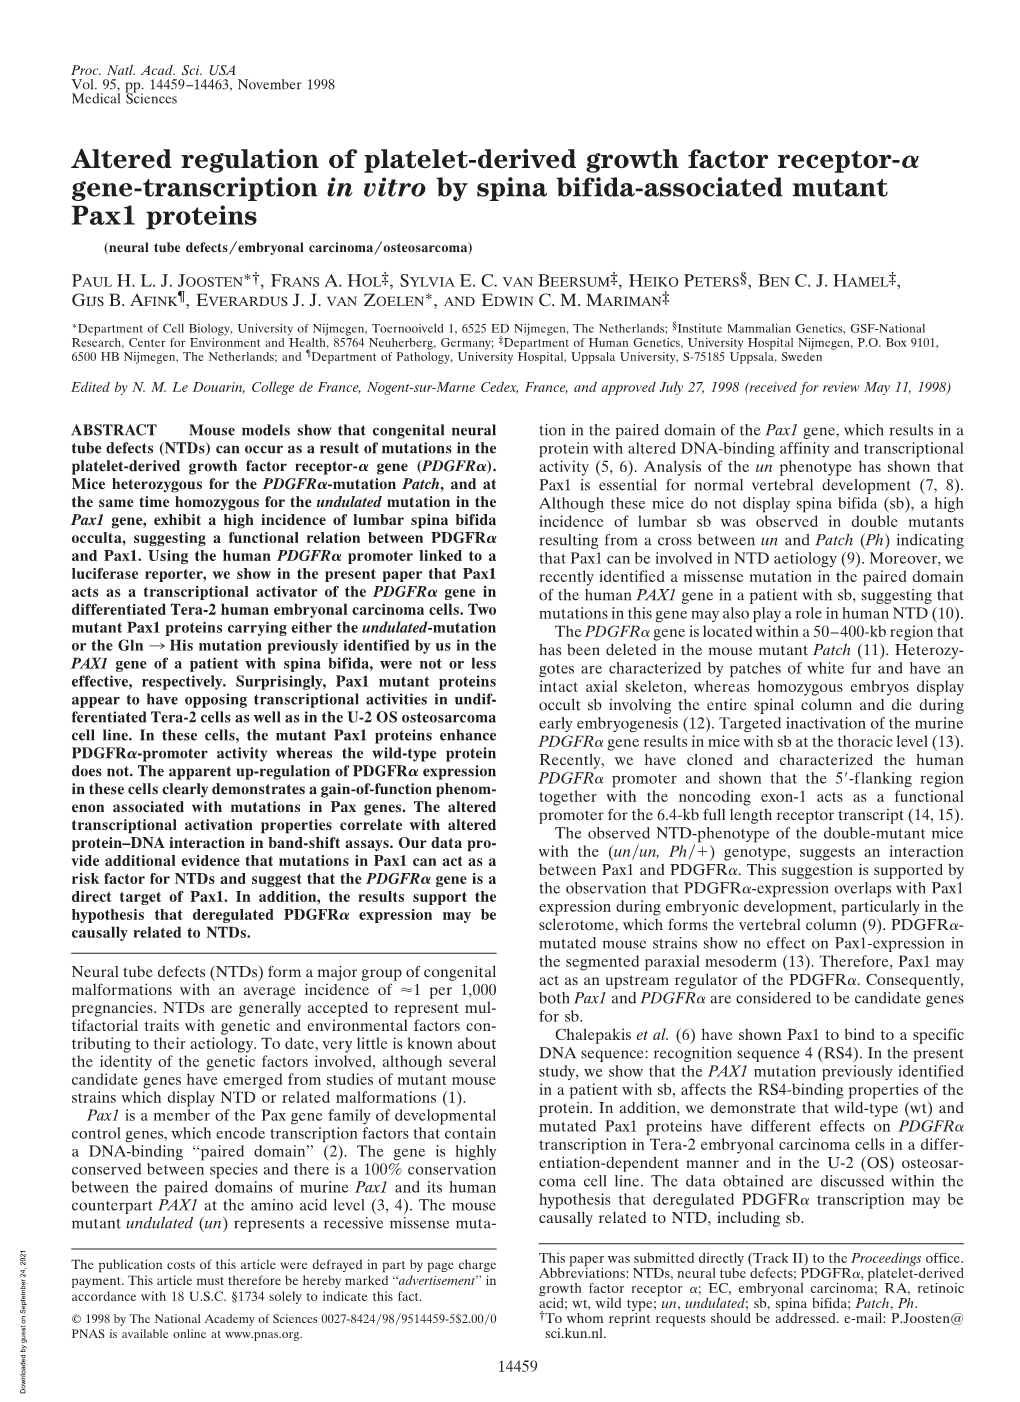 Altered Regulation of Platelet-Derived Growth Factor Receptor- Gene